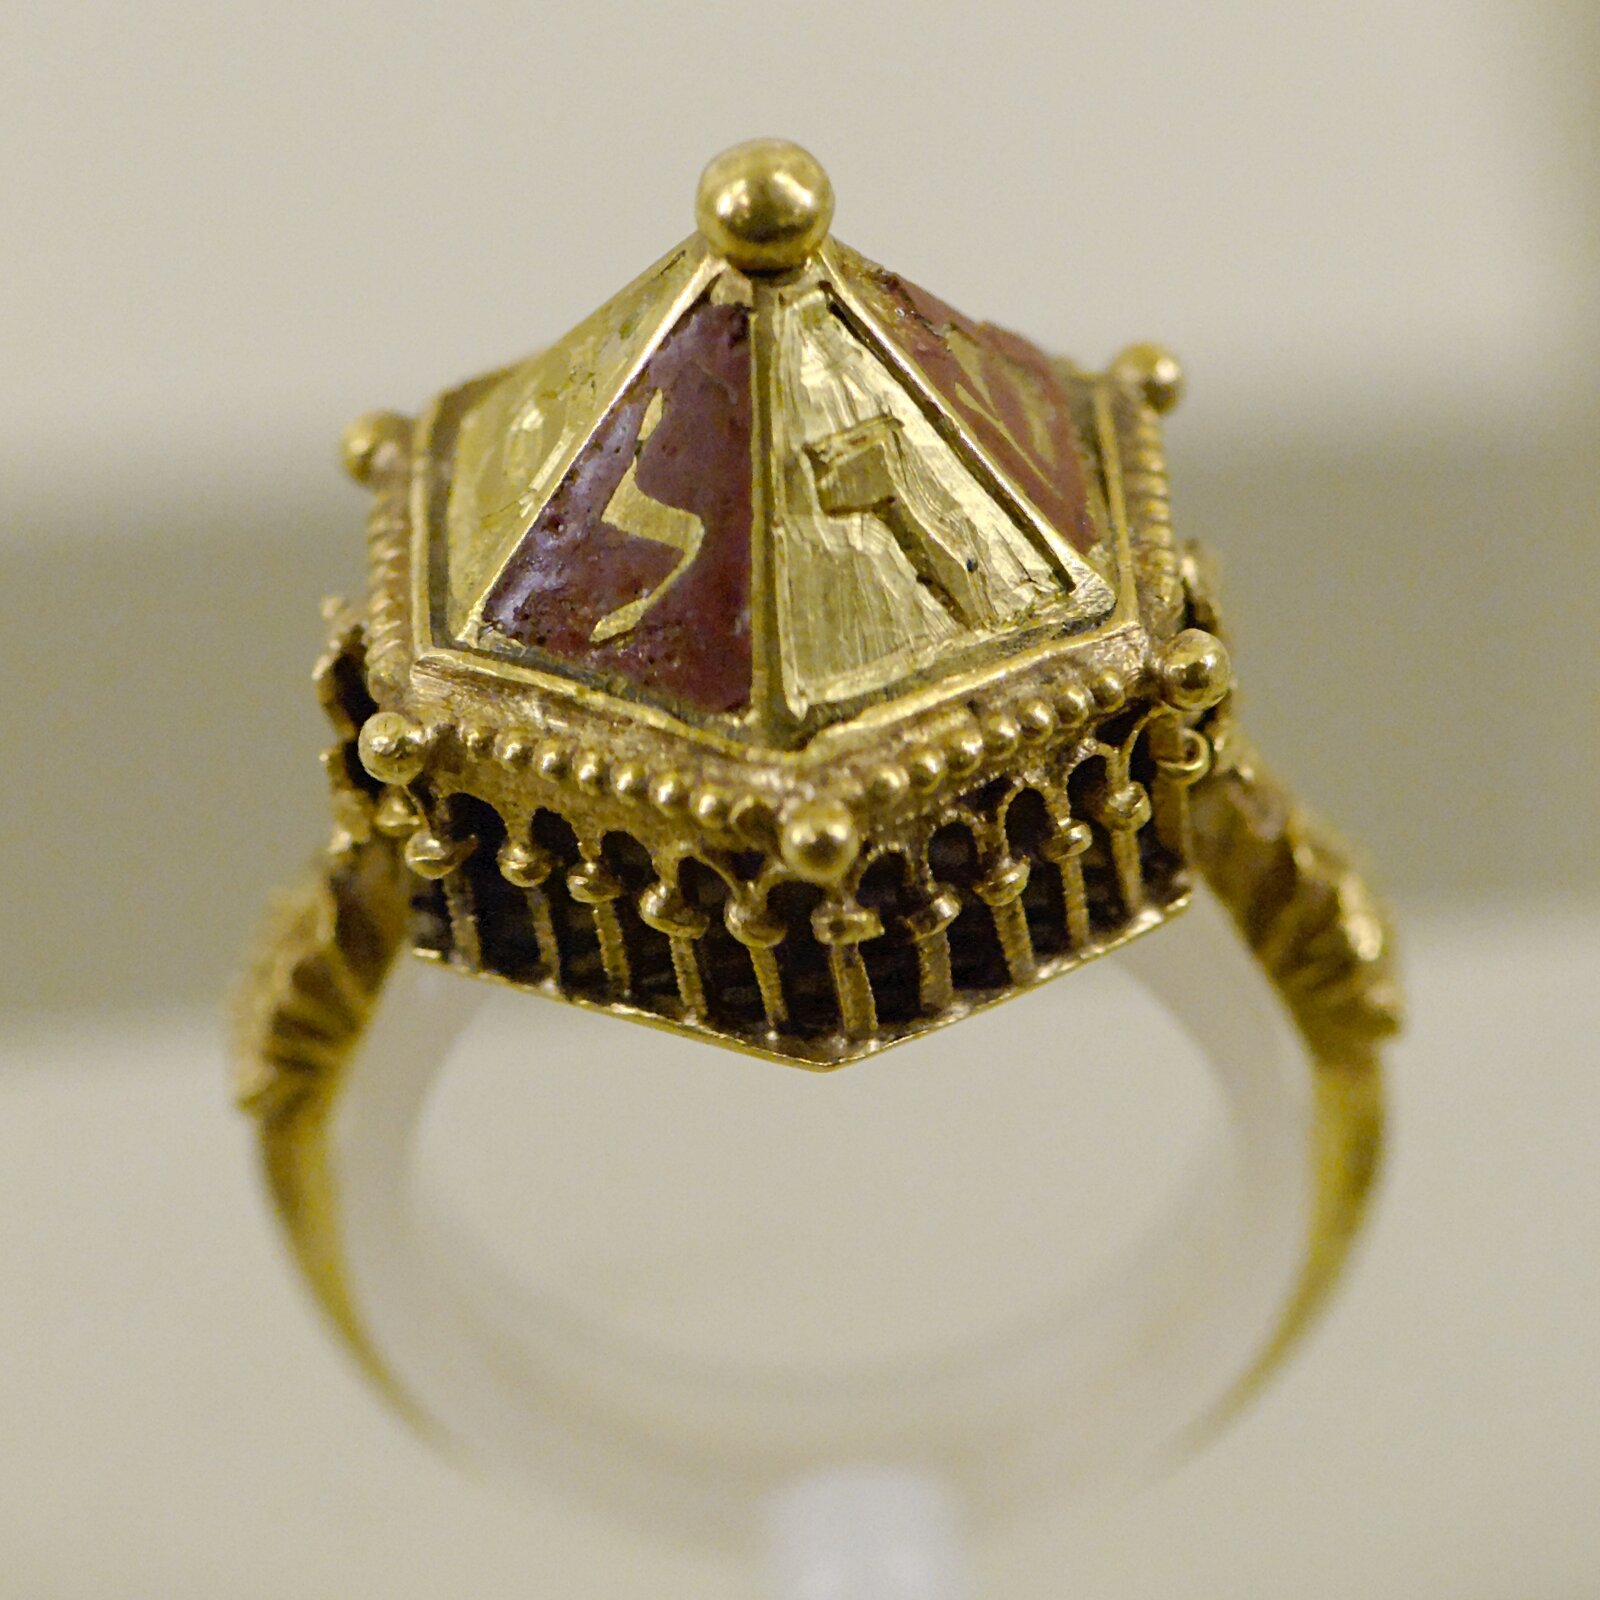 Ilustracja przedstawia złoty pierścień. Ma on stożkowaty kształt, jest bogato zdobiony po bokach, a na czubku zakończony małą kuleczką.